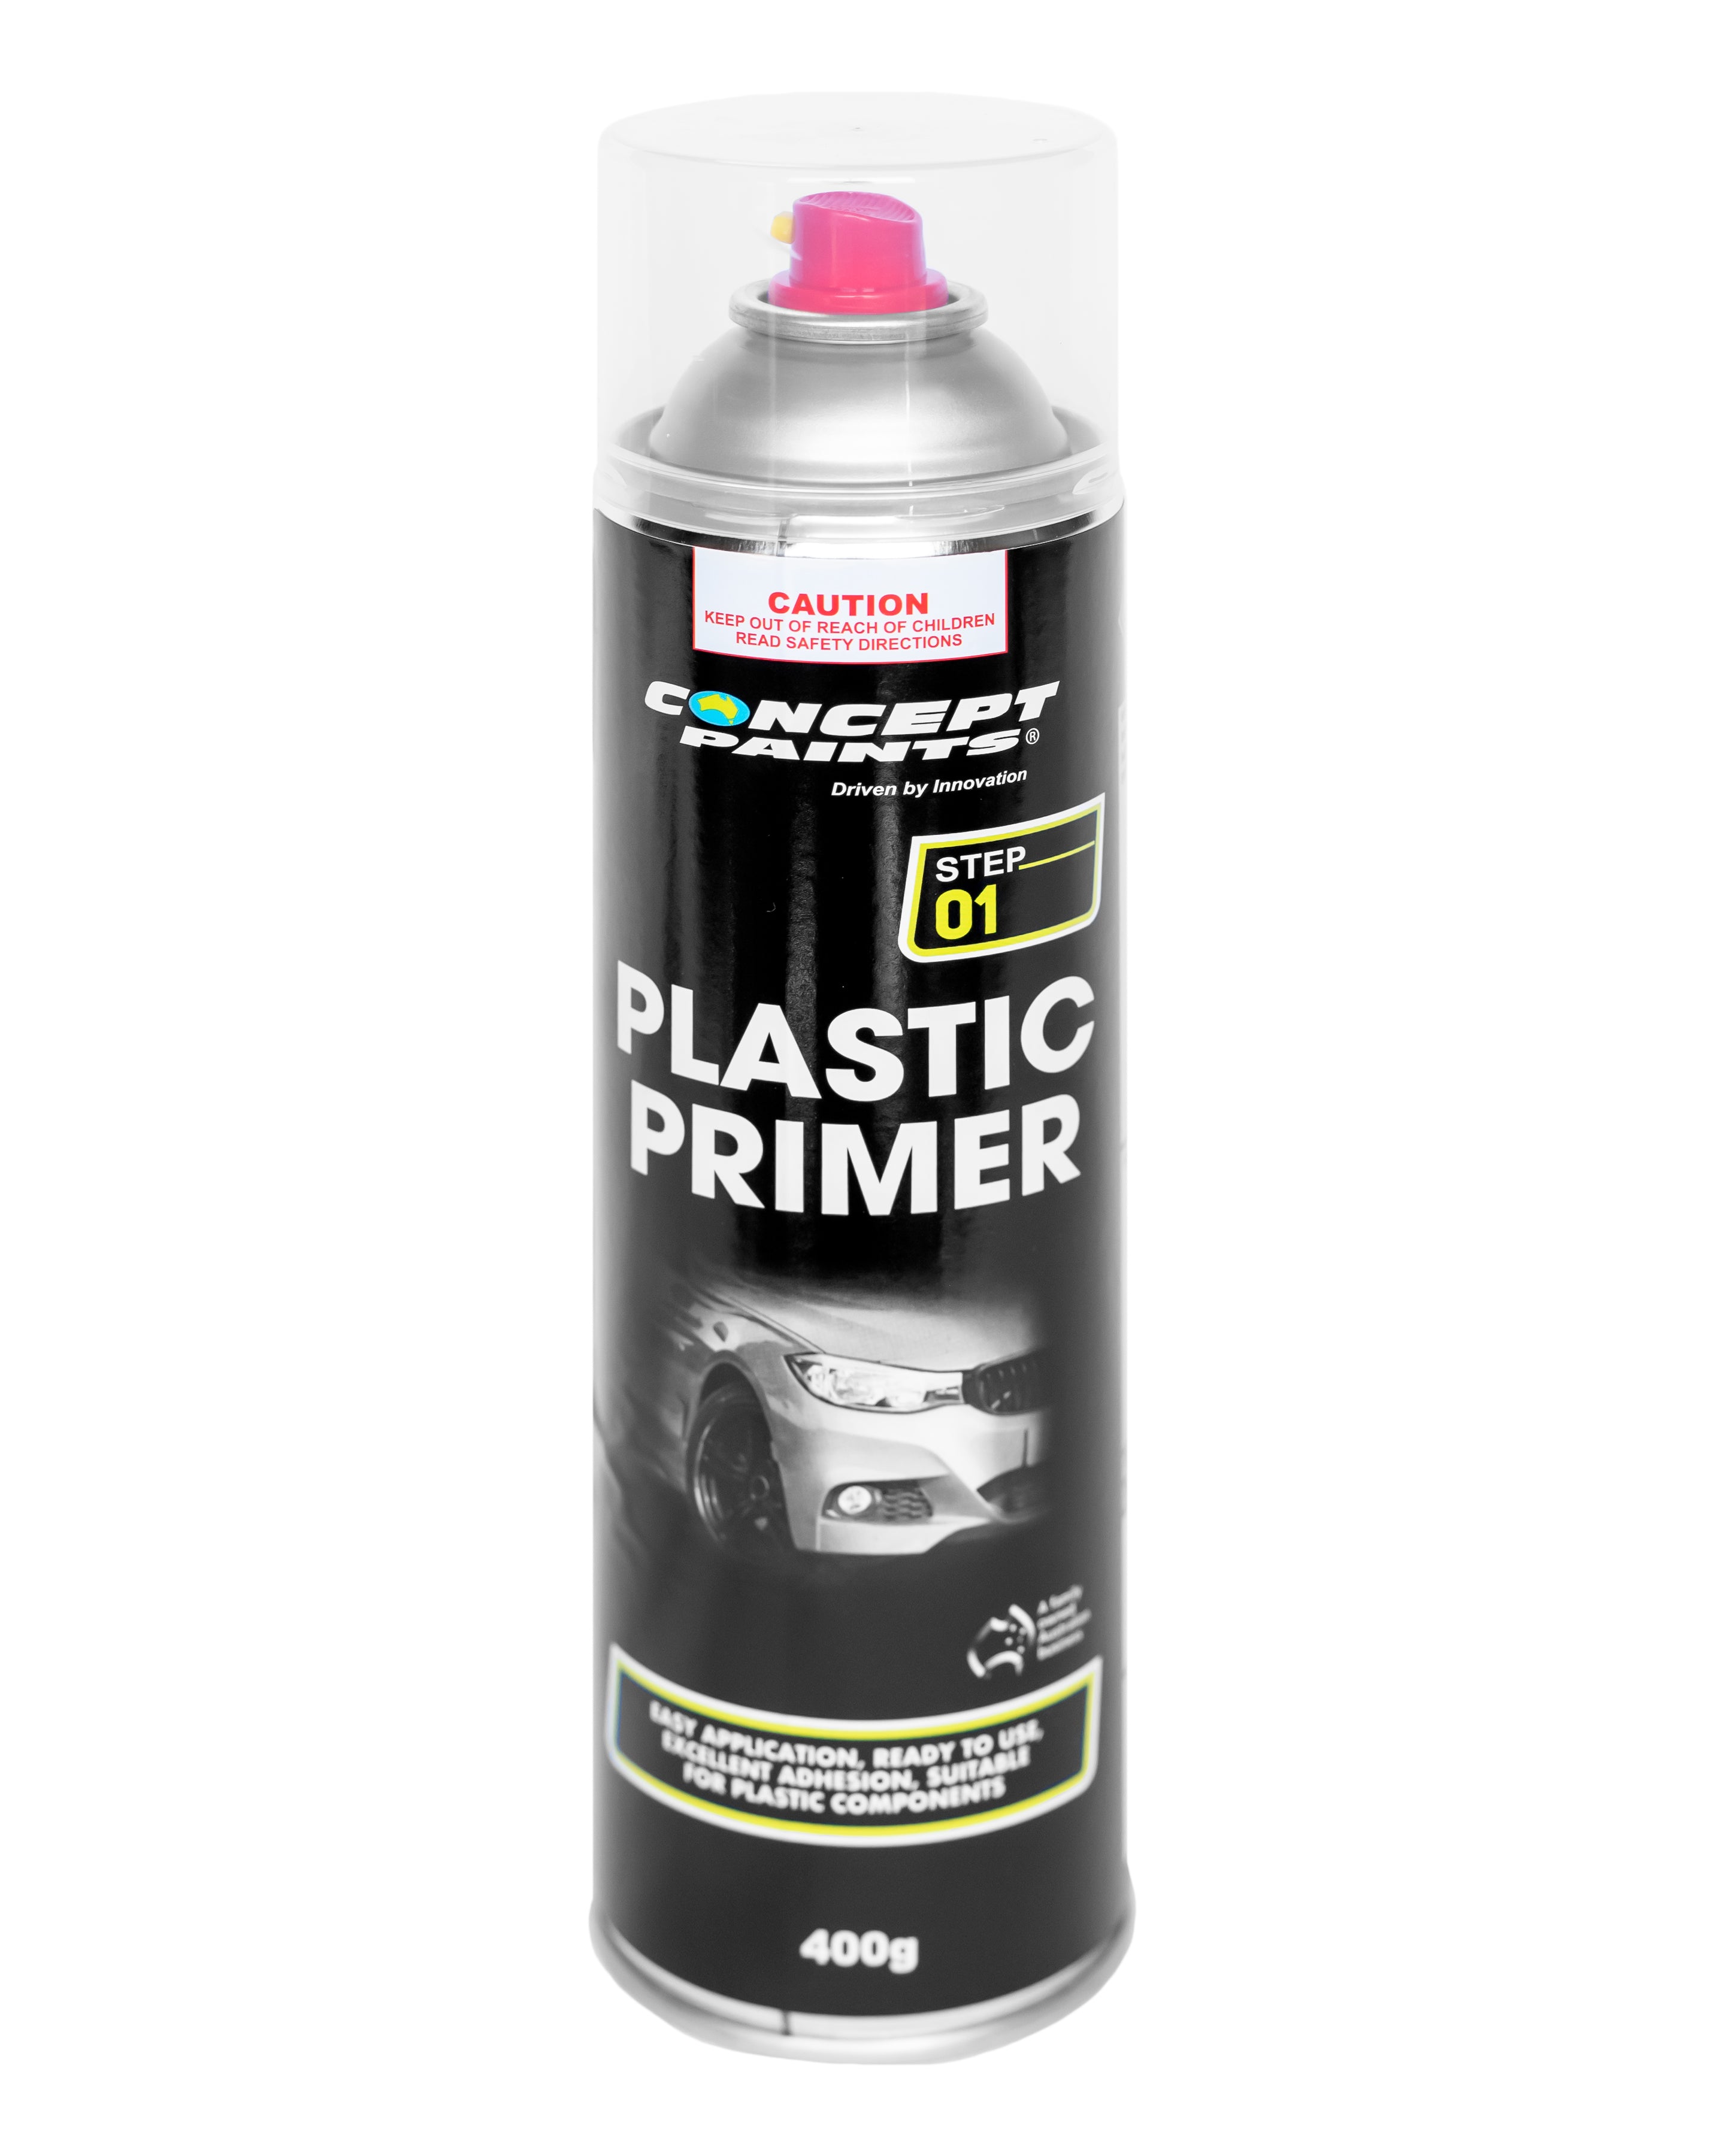 Concept Paints Plastic Primer Aerosol 400g - AU1649000.400